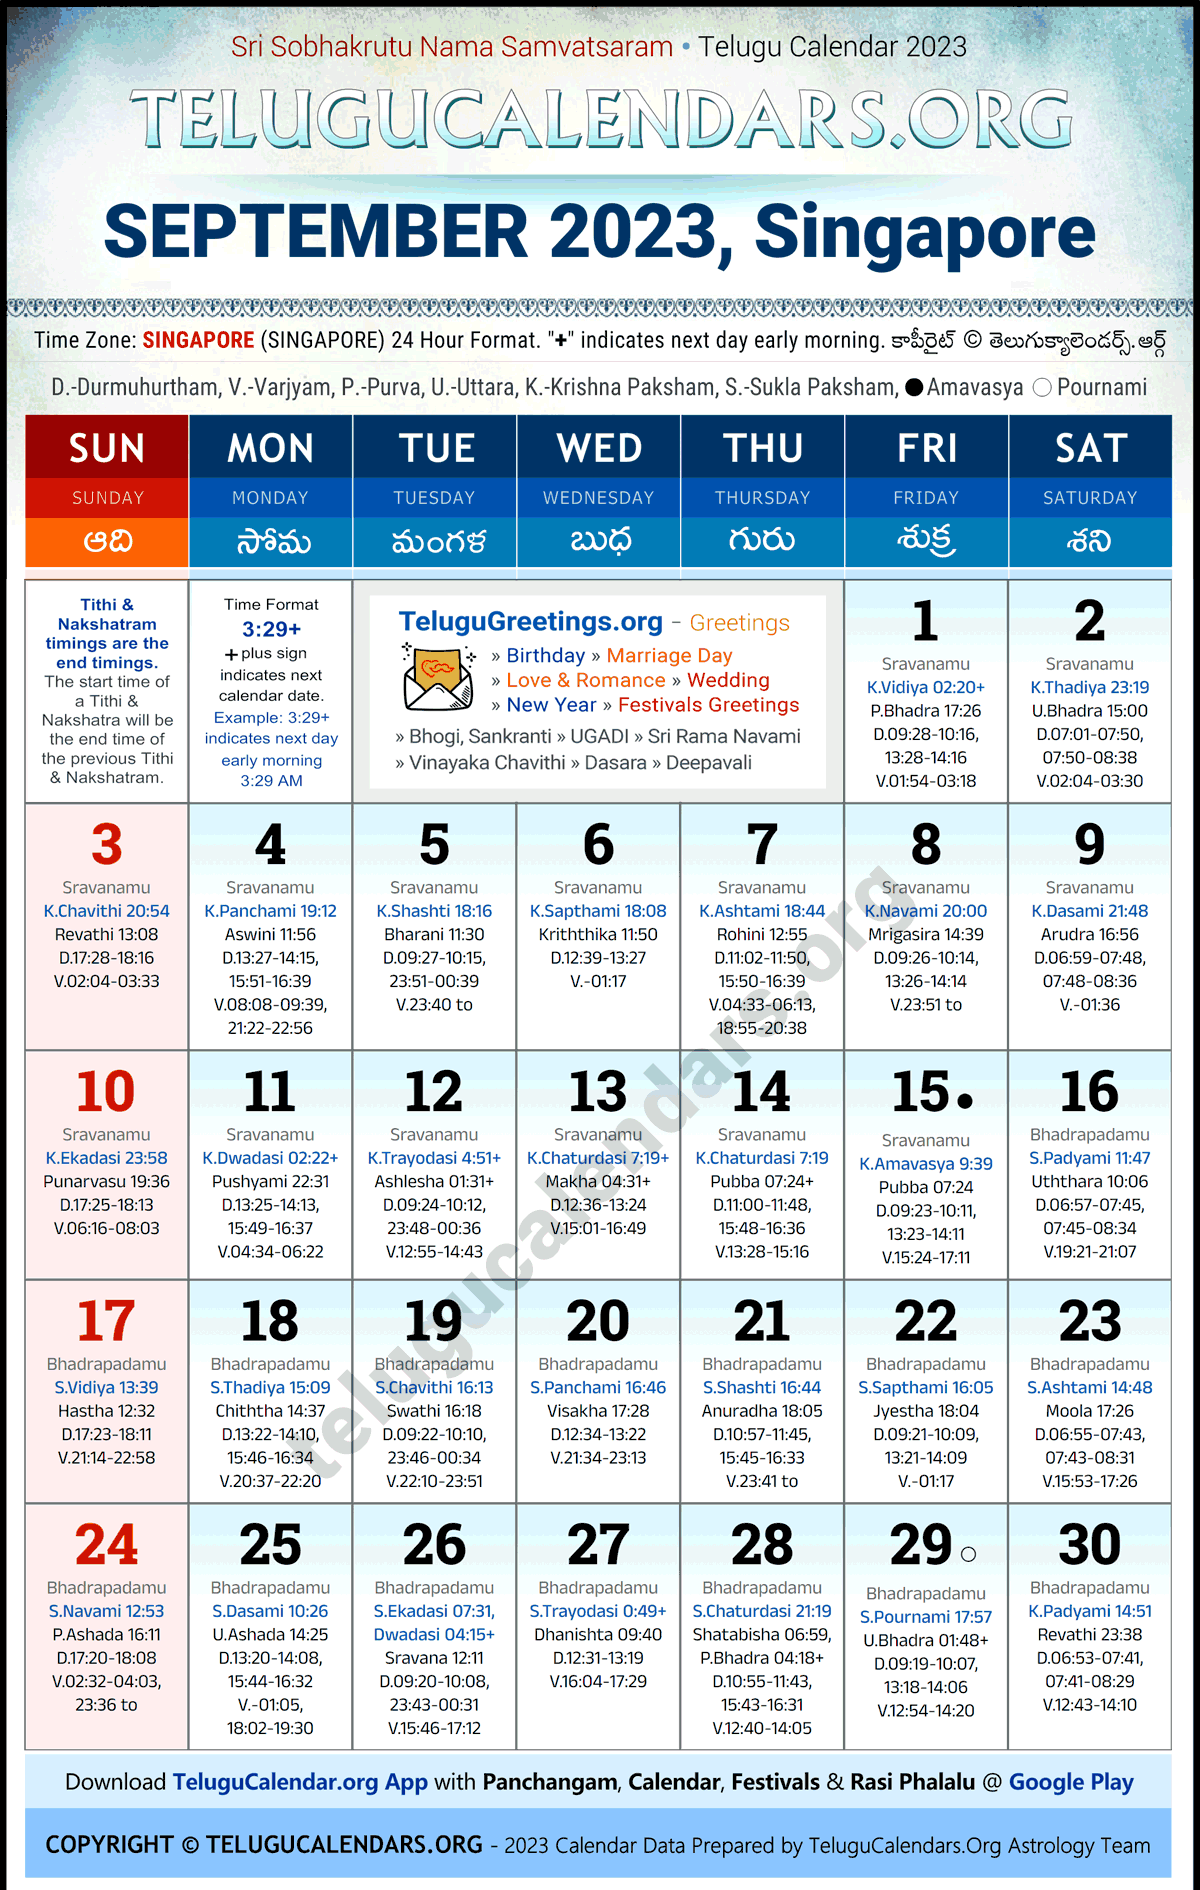 Telugu Calendar 2023 September Festivals for Singapore